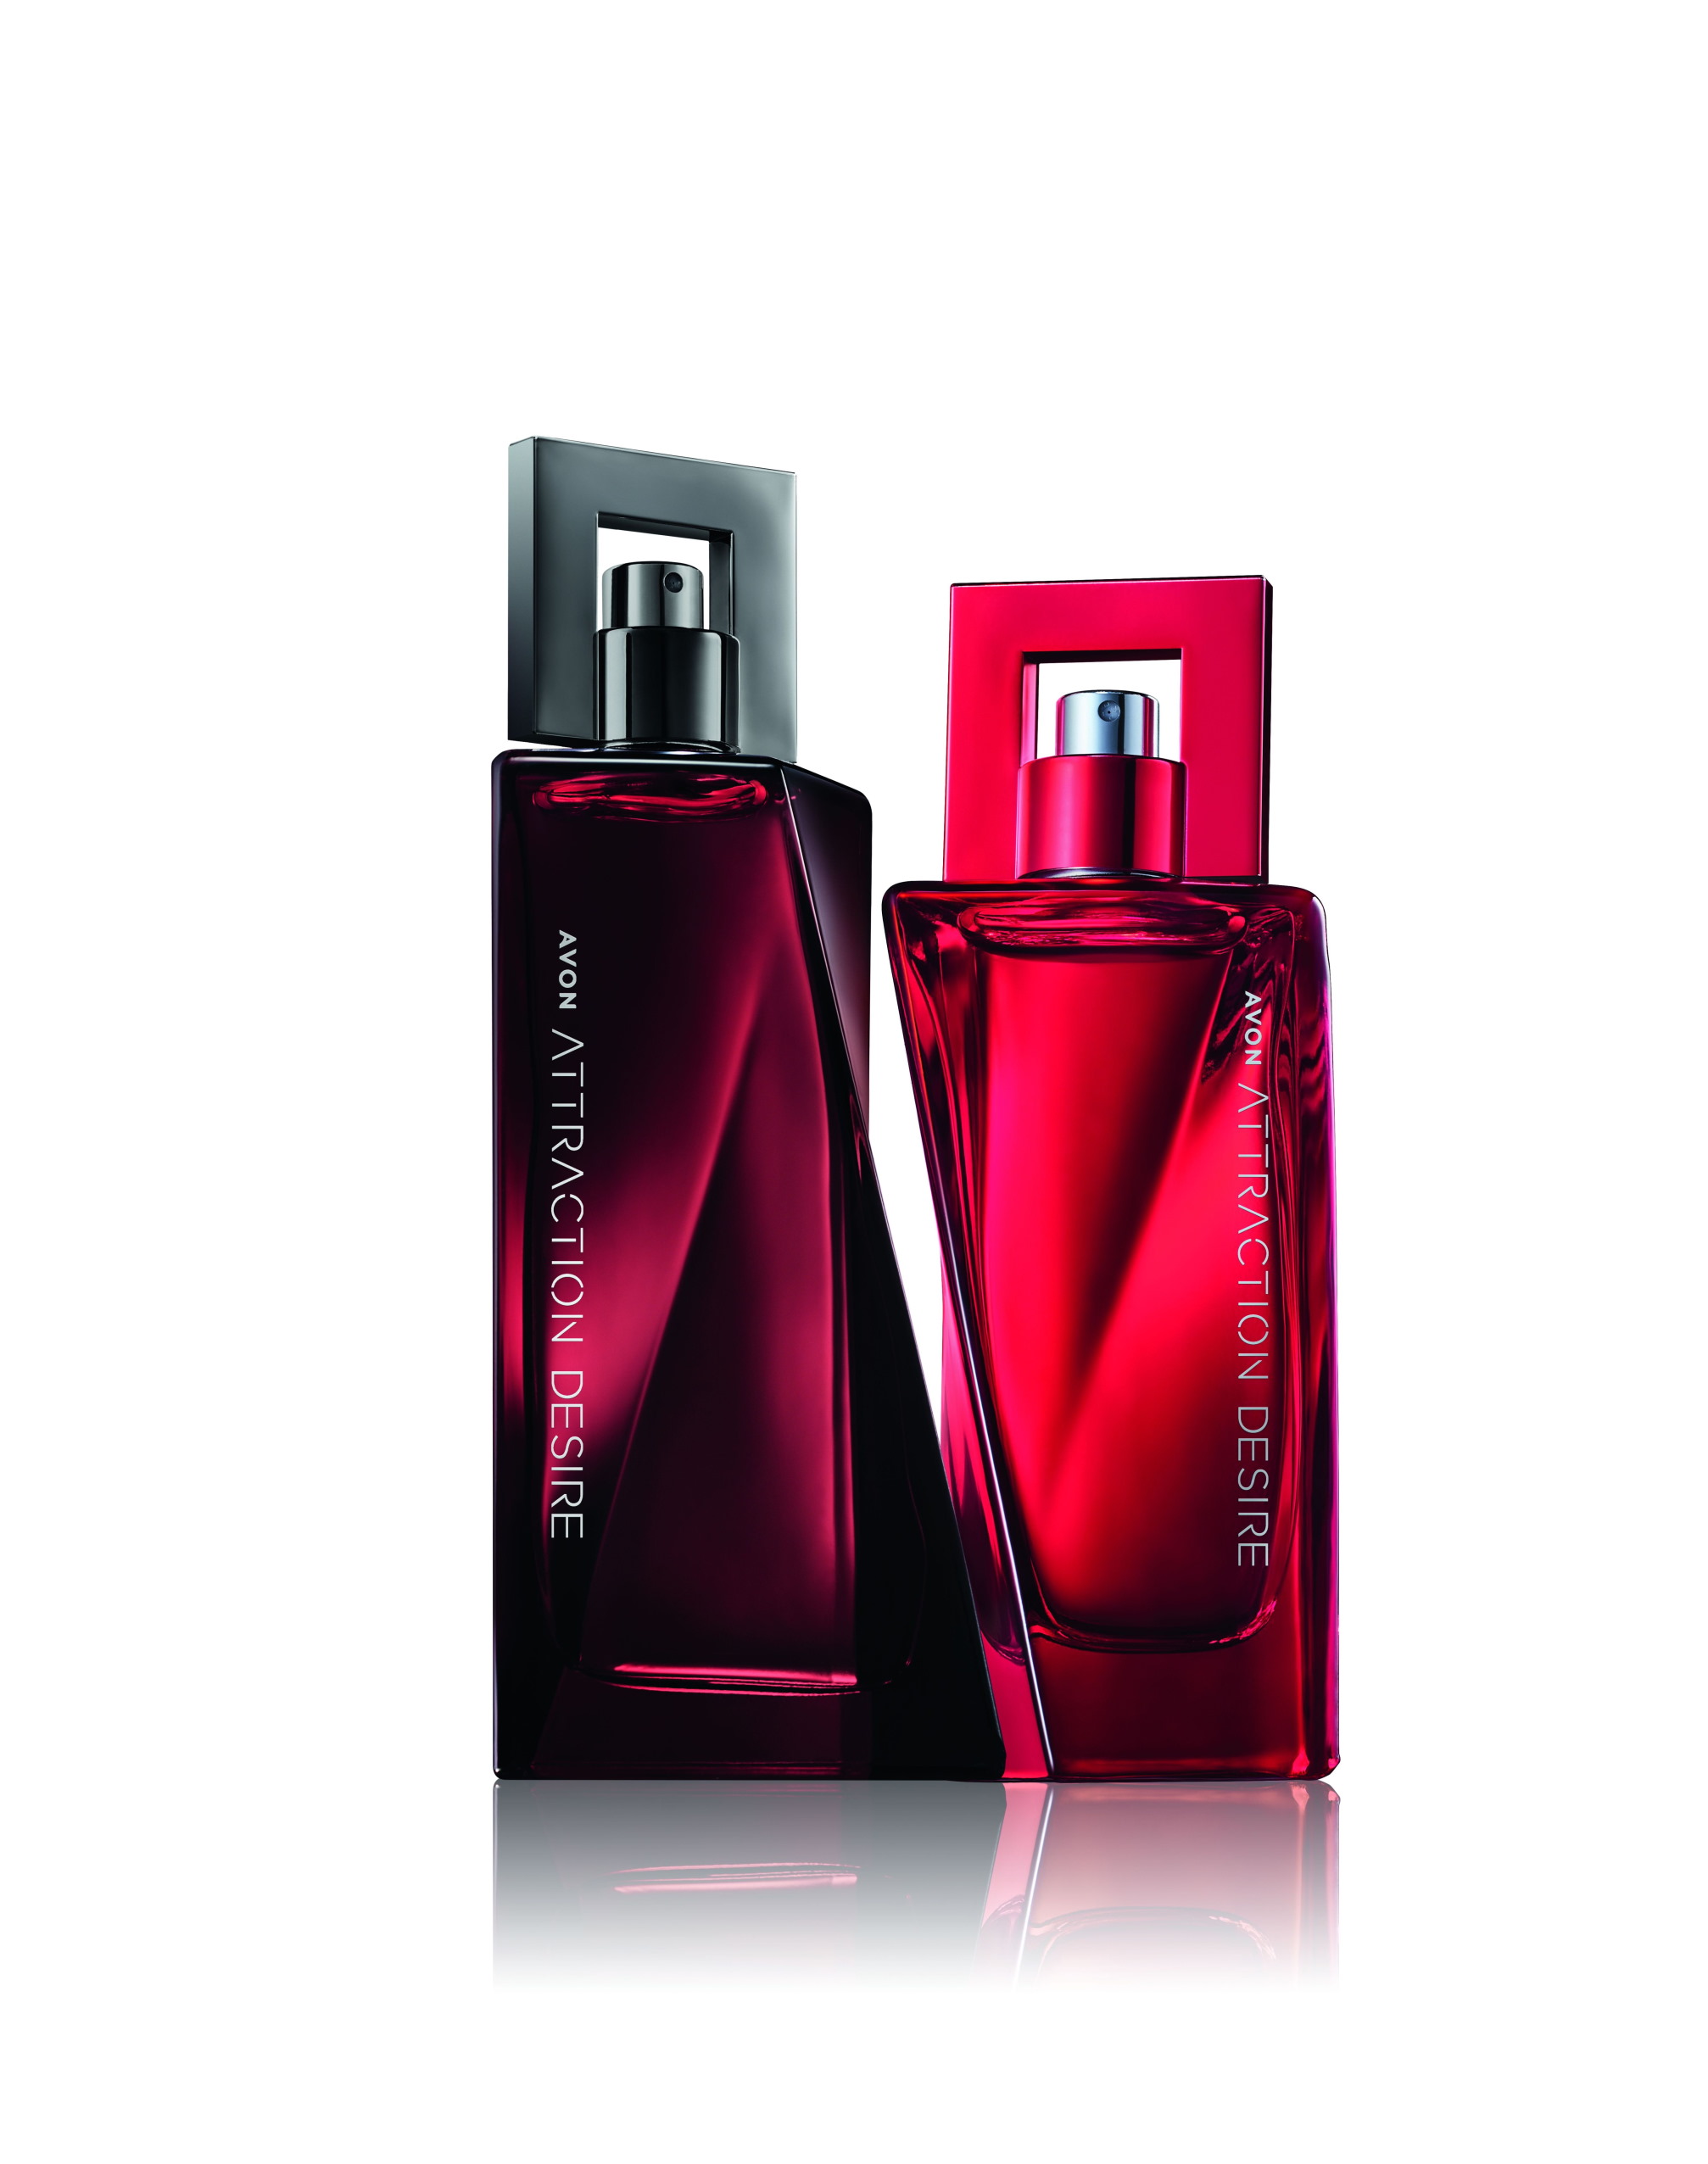 Avon Attraction Desire parfemi probudit će vašu strast uz neodoljivu notu vatre